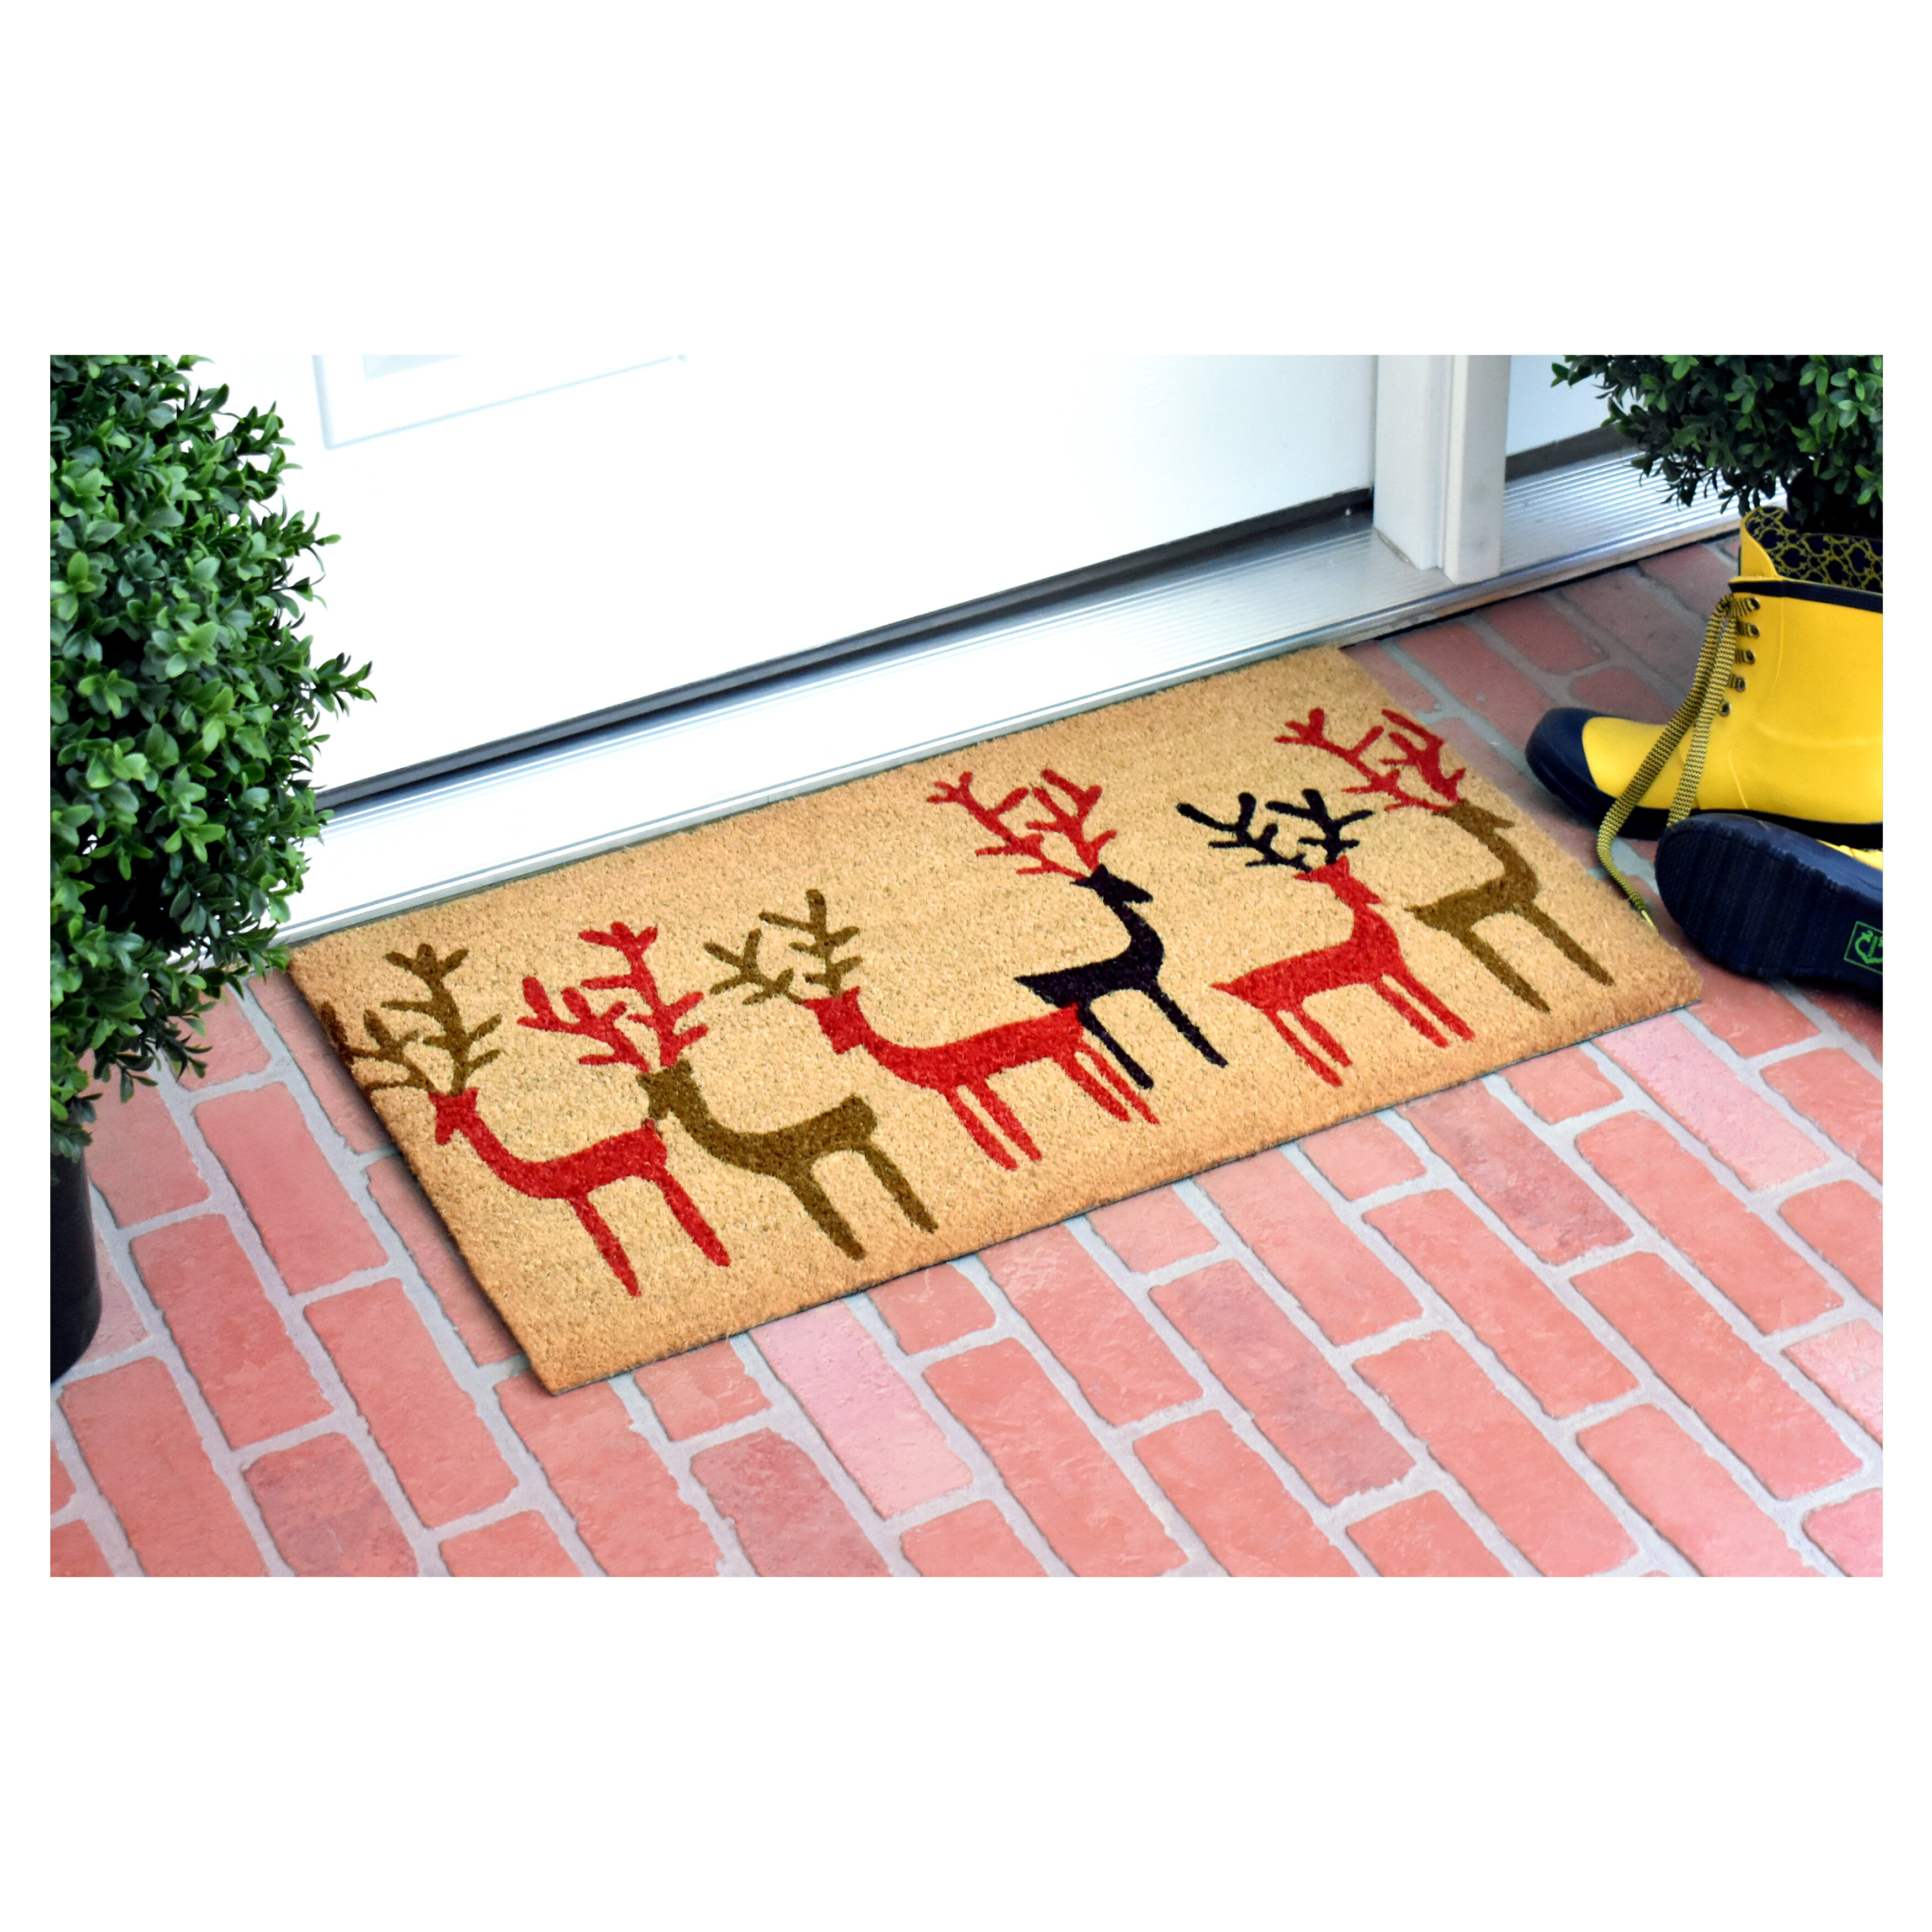 https://assets.wfcdn.com/im/09788339/compr-r85/6598/65980632/loyola-hartfield-christmas-deer-29-in-x-17-in-non-slip-outdoor-door-mat.jpg